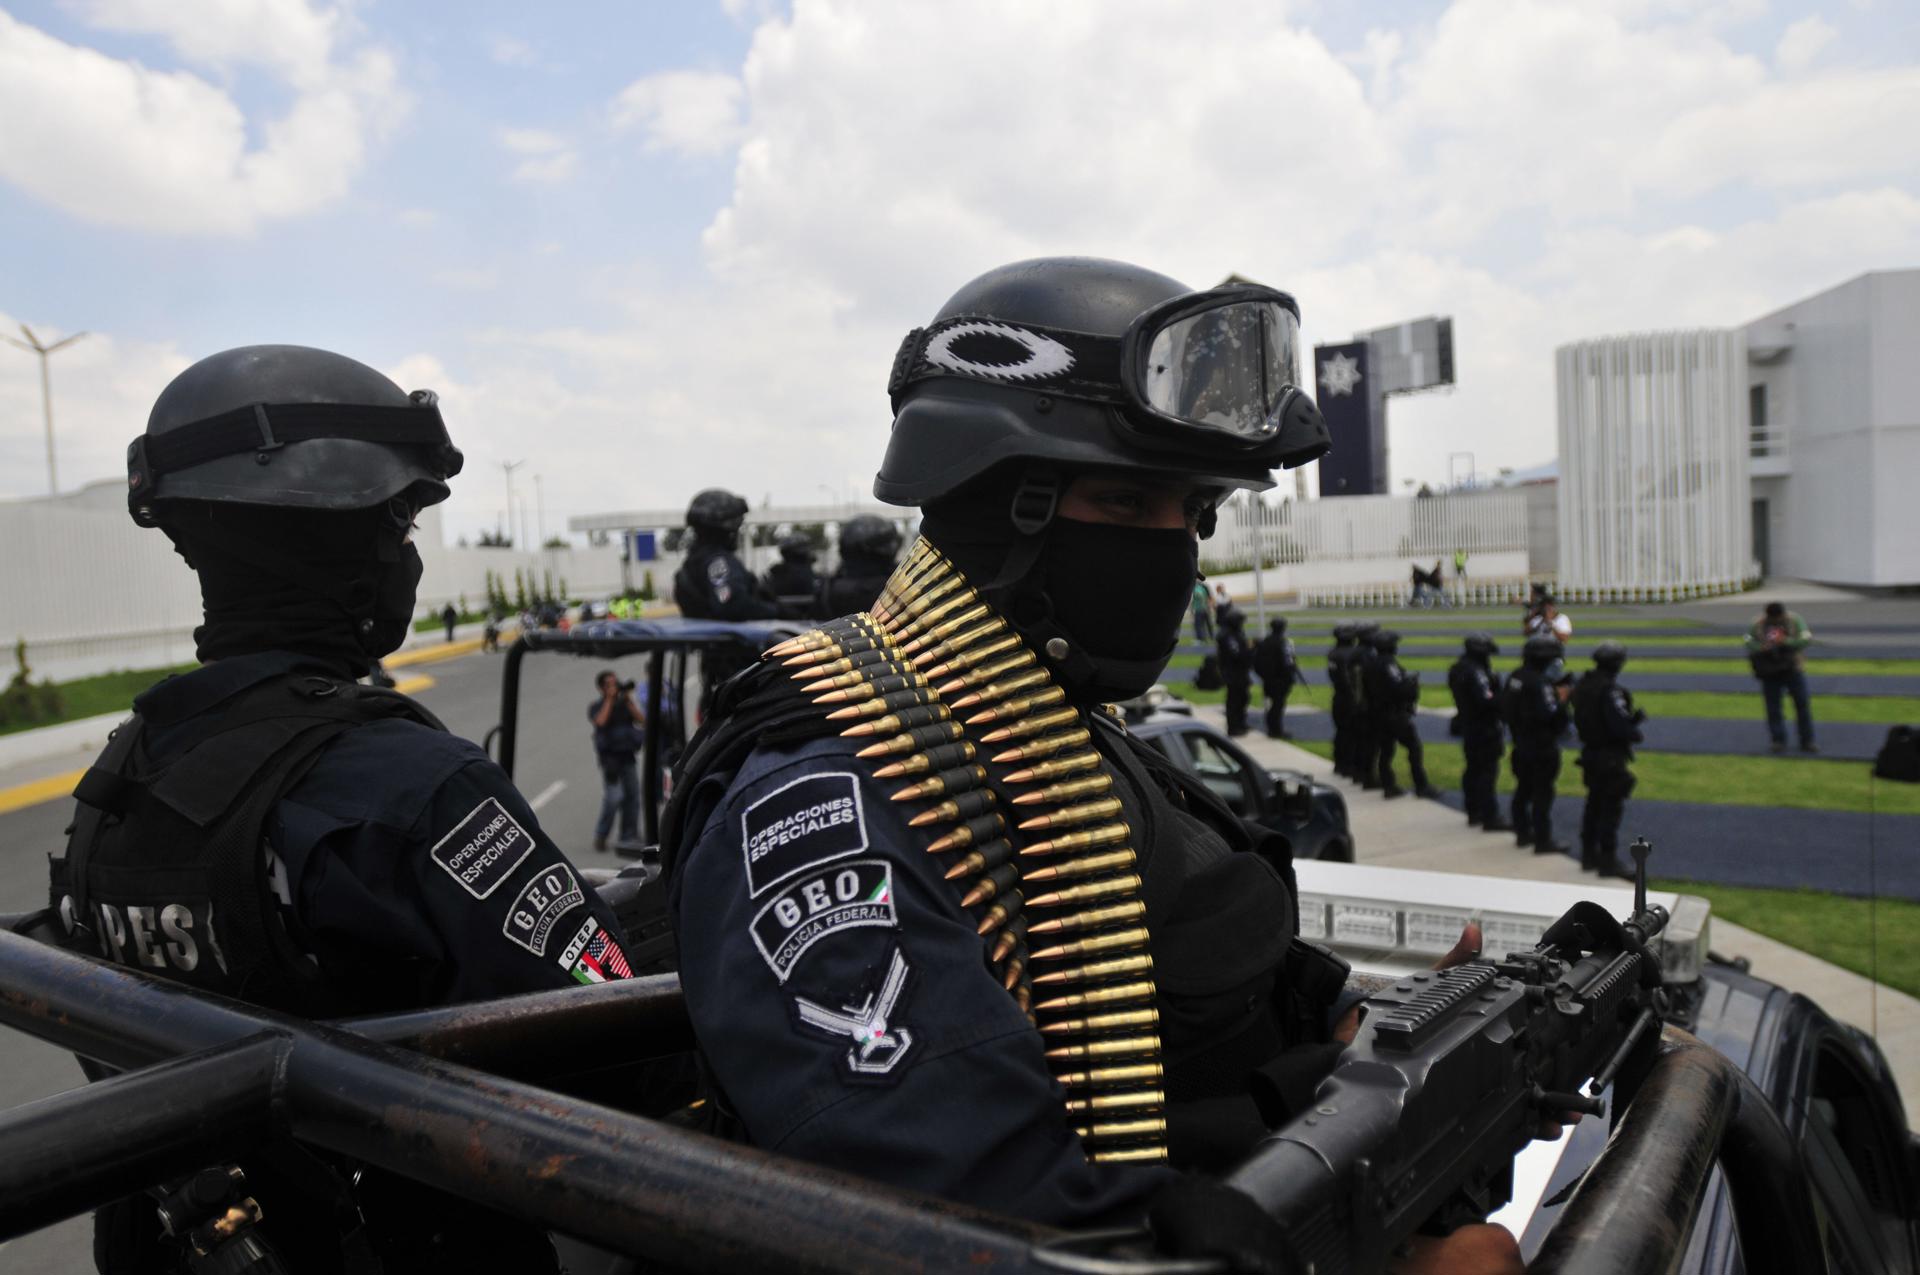 Grupo criminal ataca instalaciones de la Policía en la frontera de México con EE.UU.